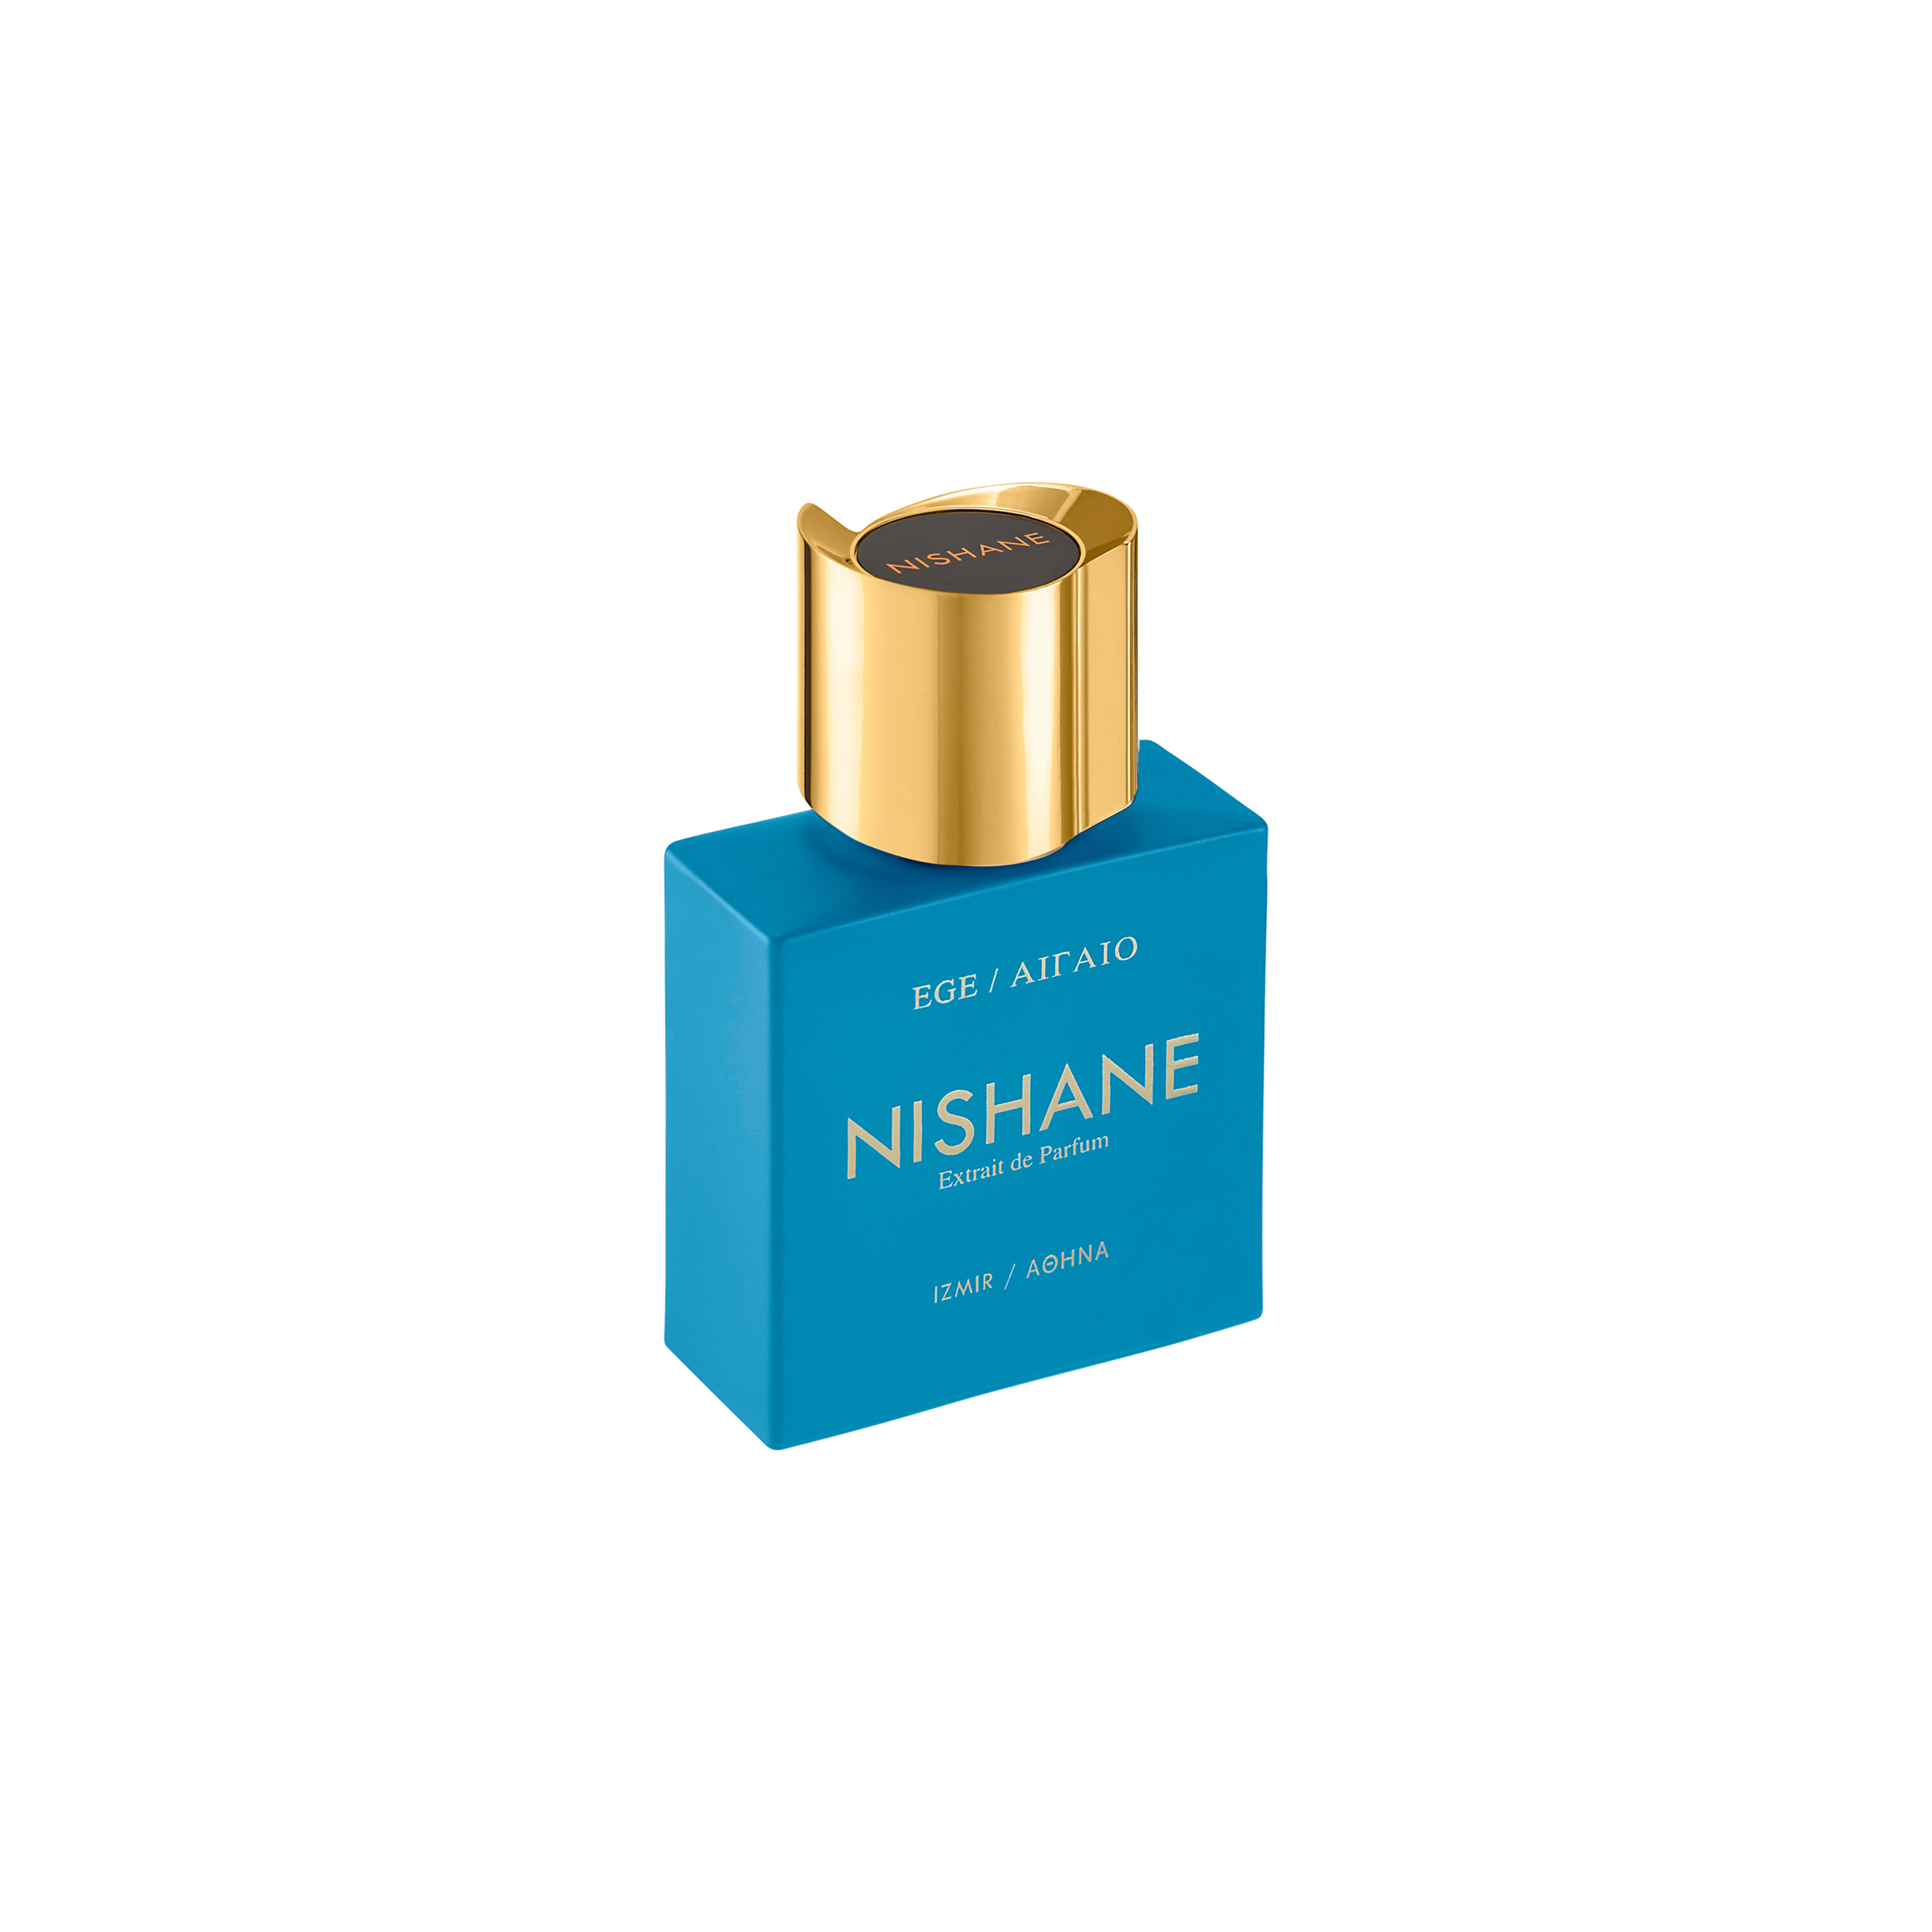 NISHANE Ege ΑΙΓΑΙΟ Extrait de Parfum 50ml